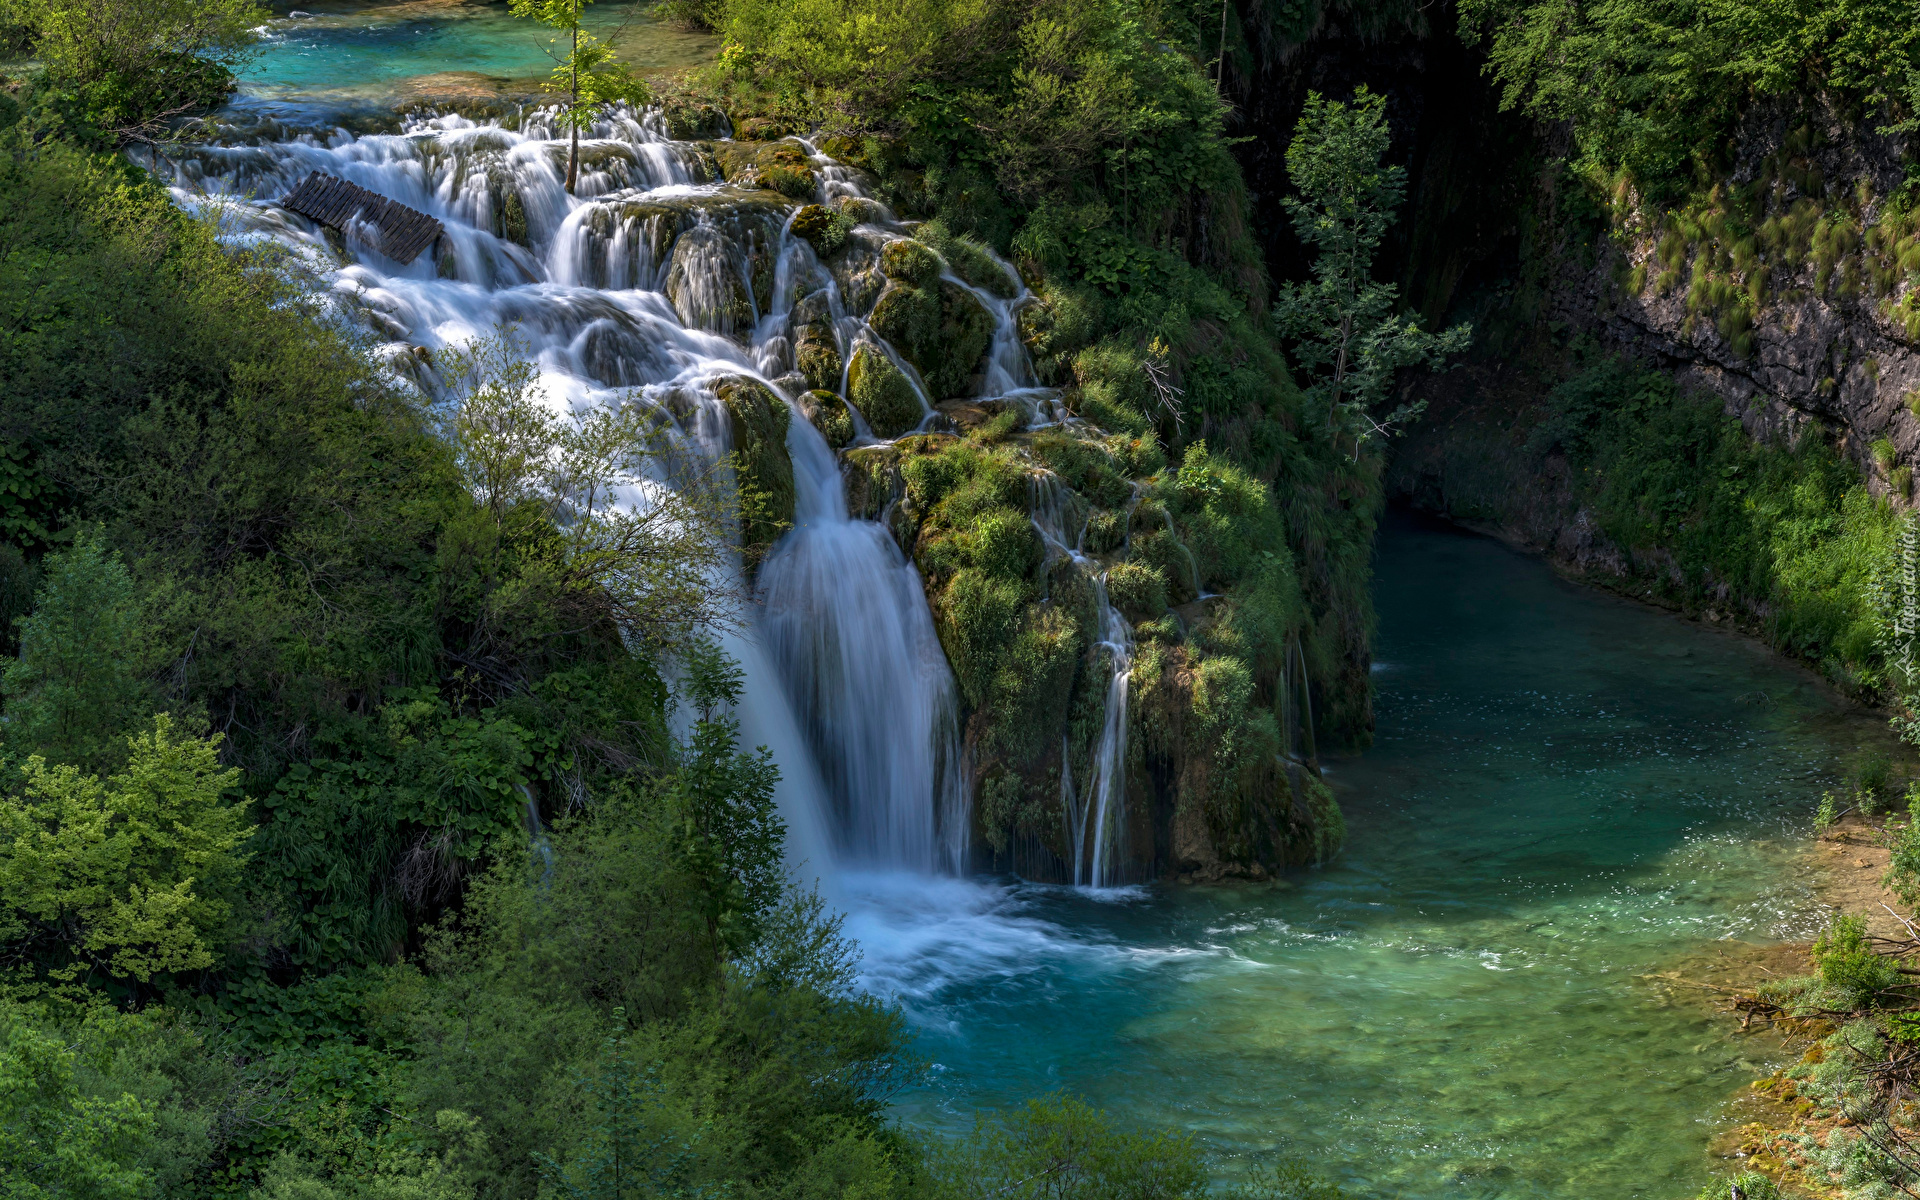 Park Narodowy Jezior Plitwickich, Plitvice, Chorwacja, Drzewa, Skały, Wodospad, Korana Waterfall